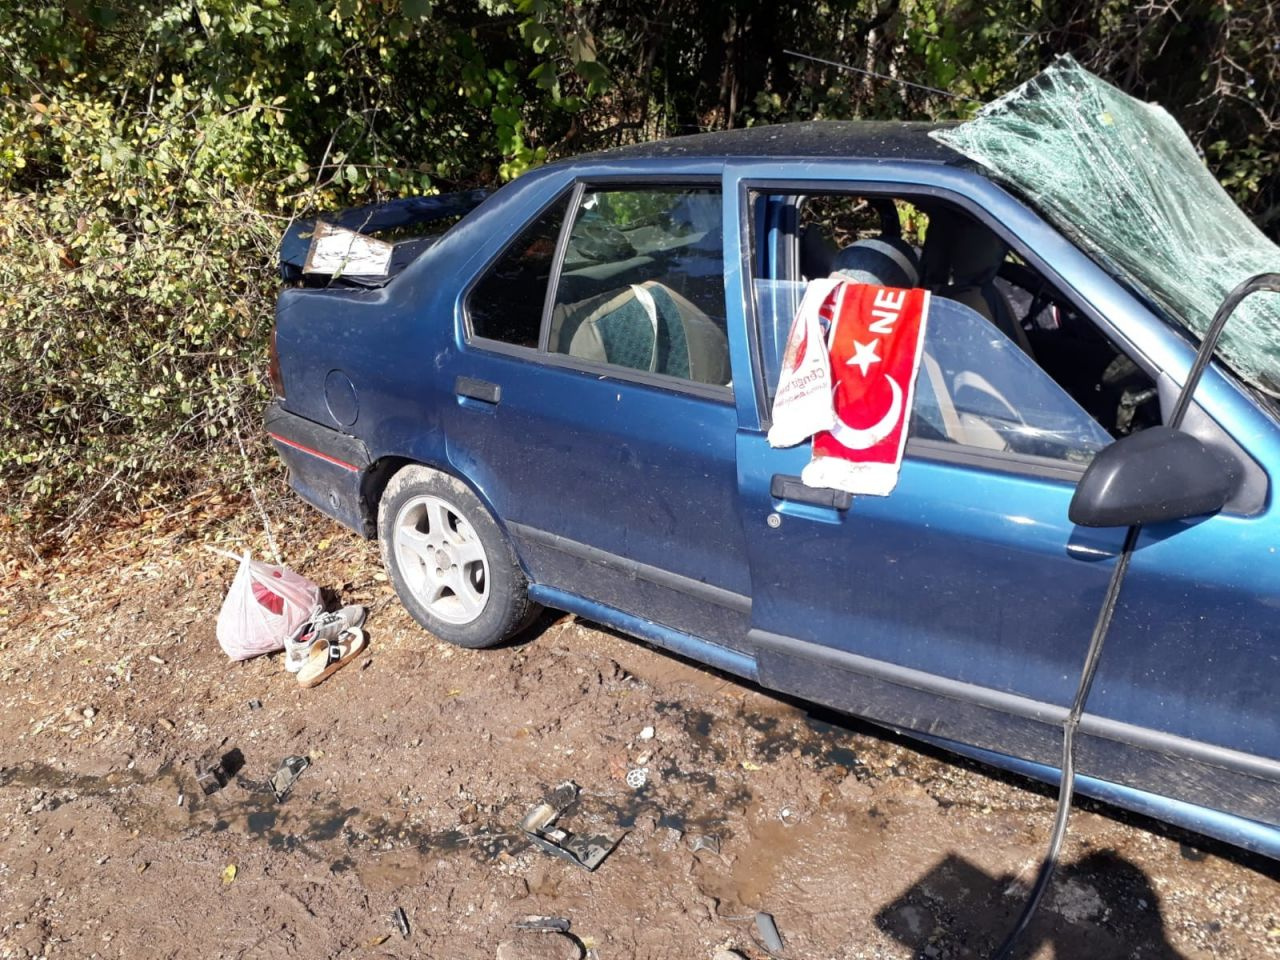 Manisa'da süt tankeri otomobil ile çarpıştı: 1 ölü 5 yaralı